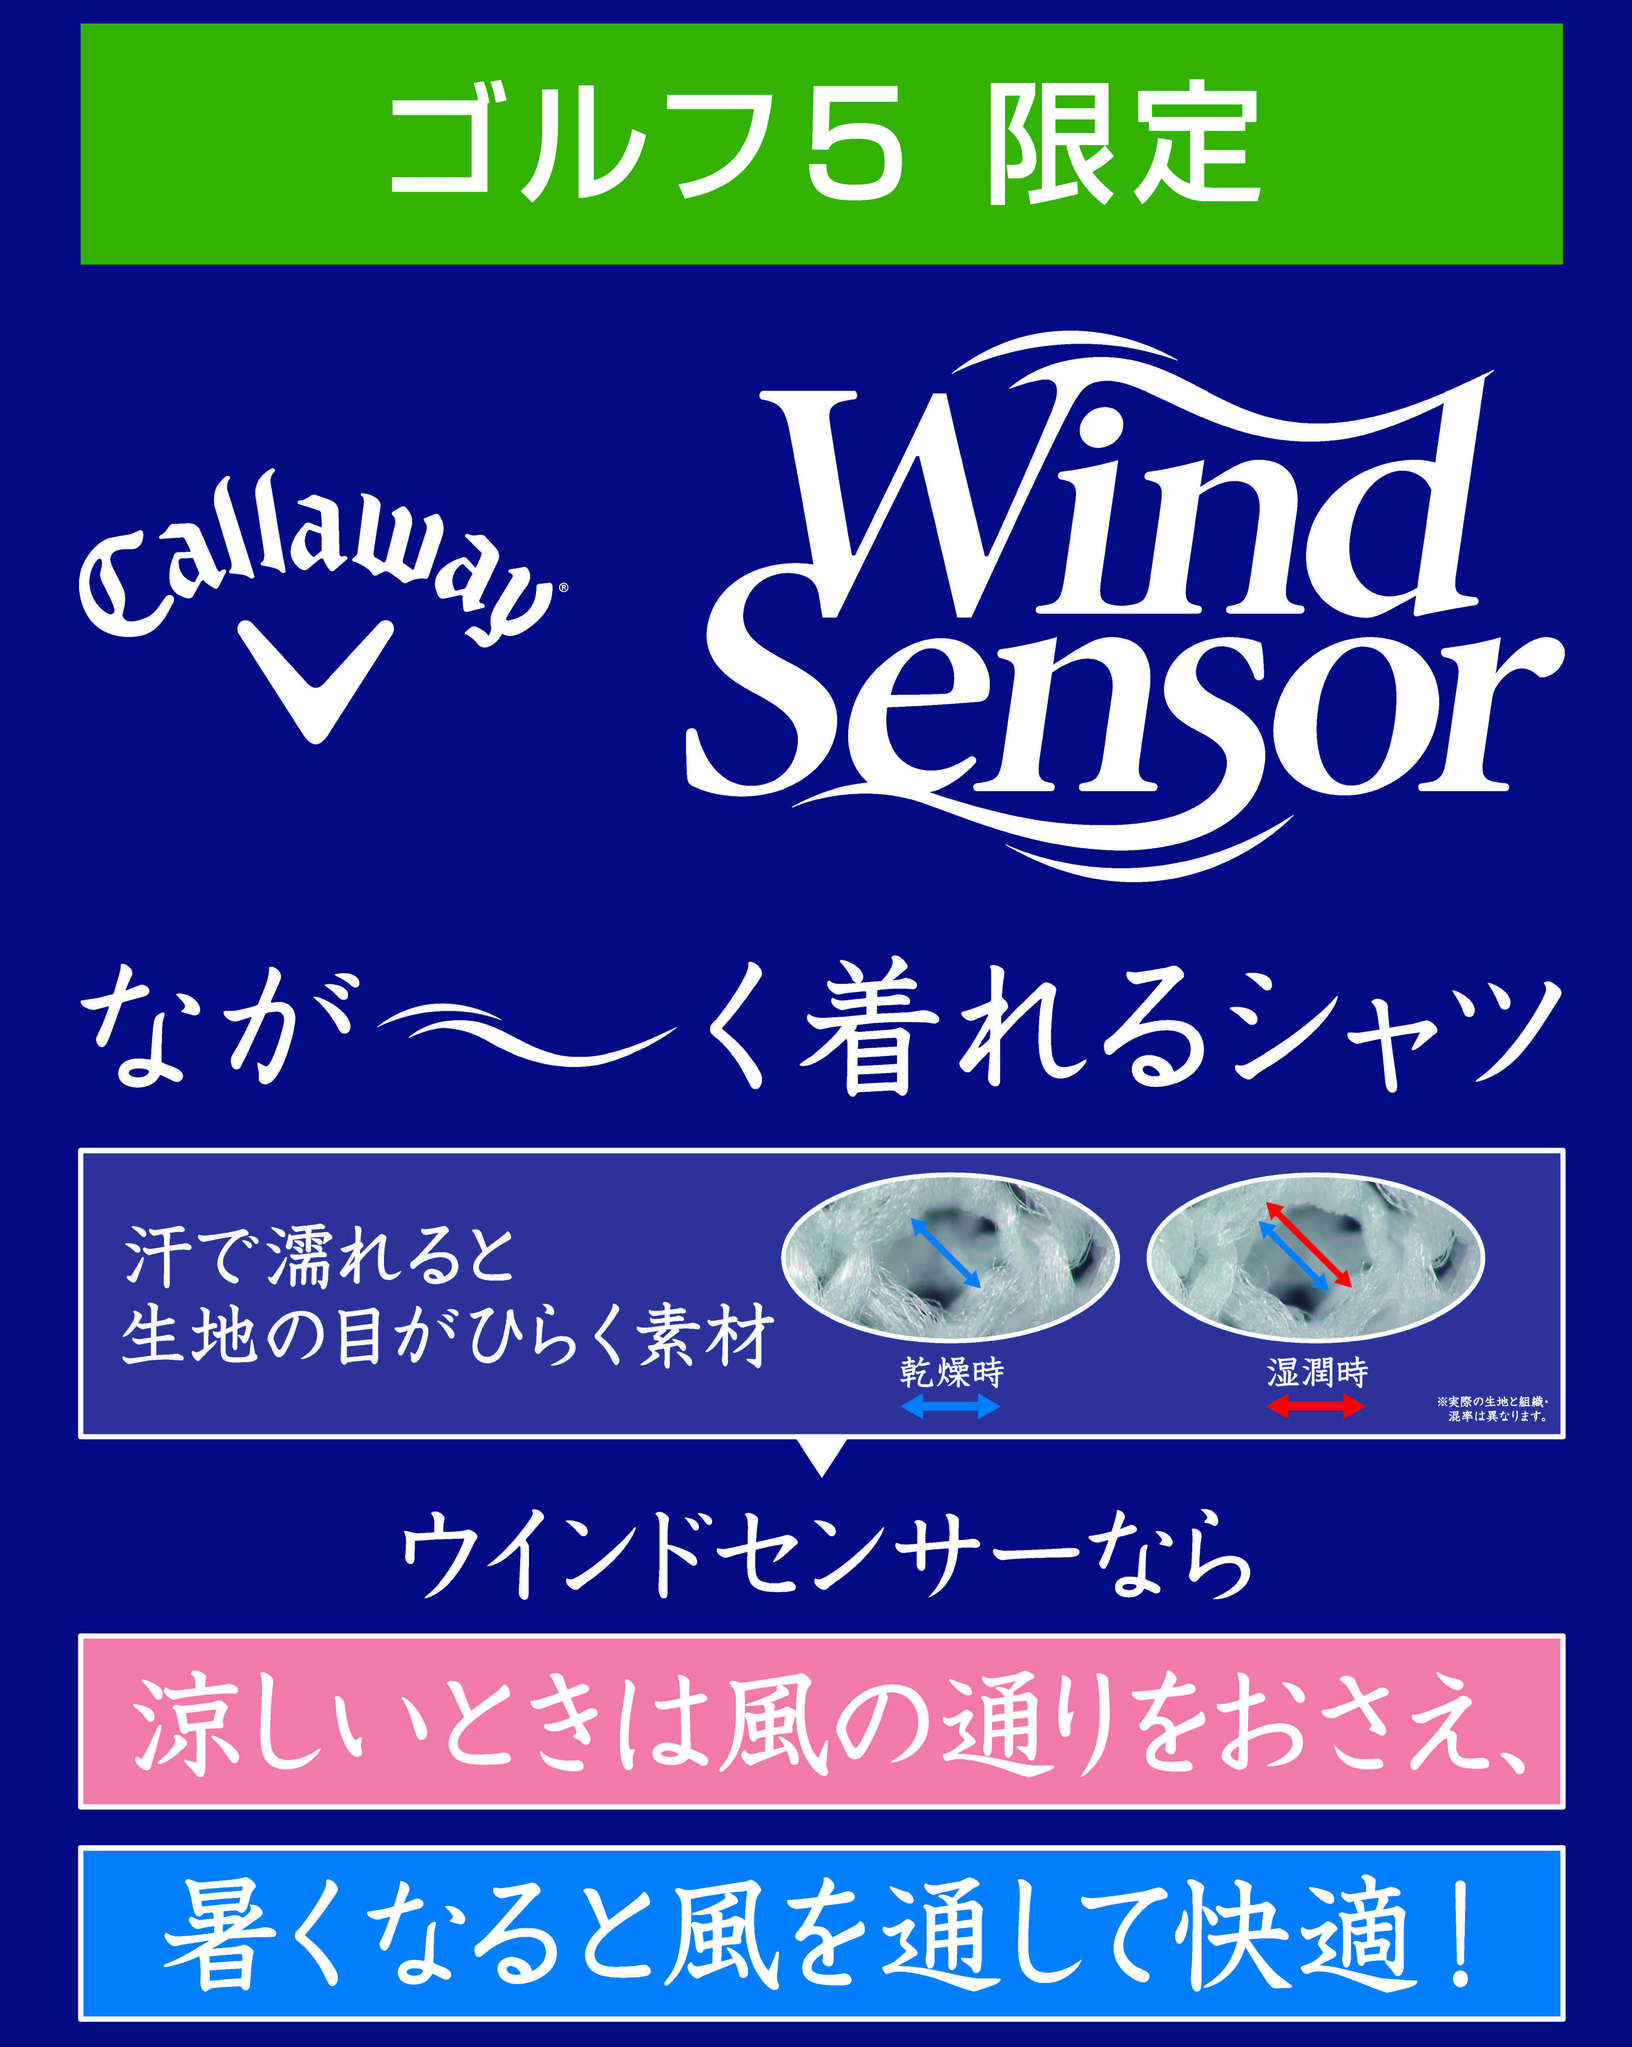 新開発 「WIND SENSOR(ウインドセンサー)」キャロウェイ 